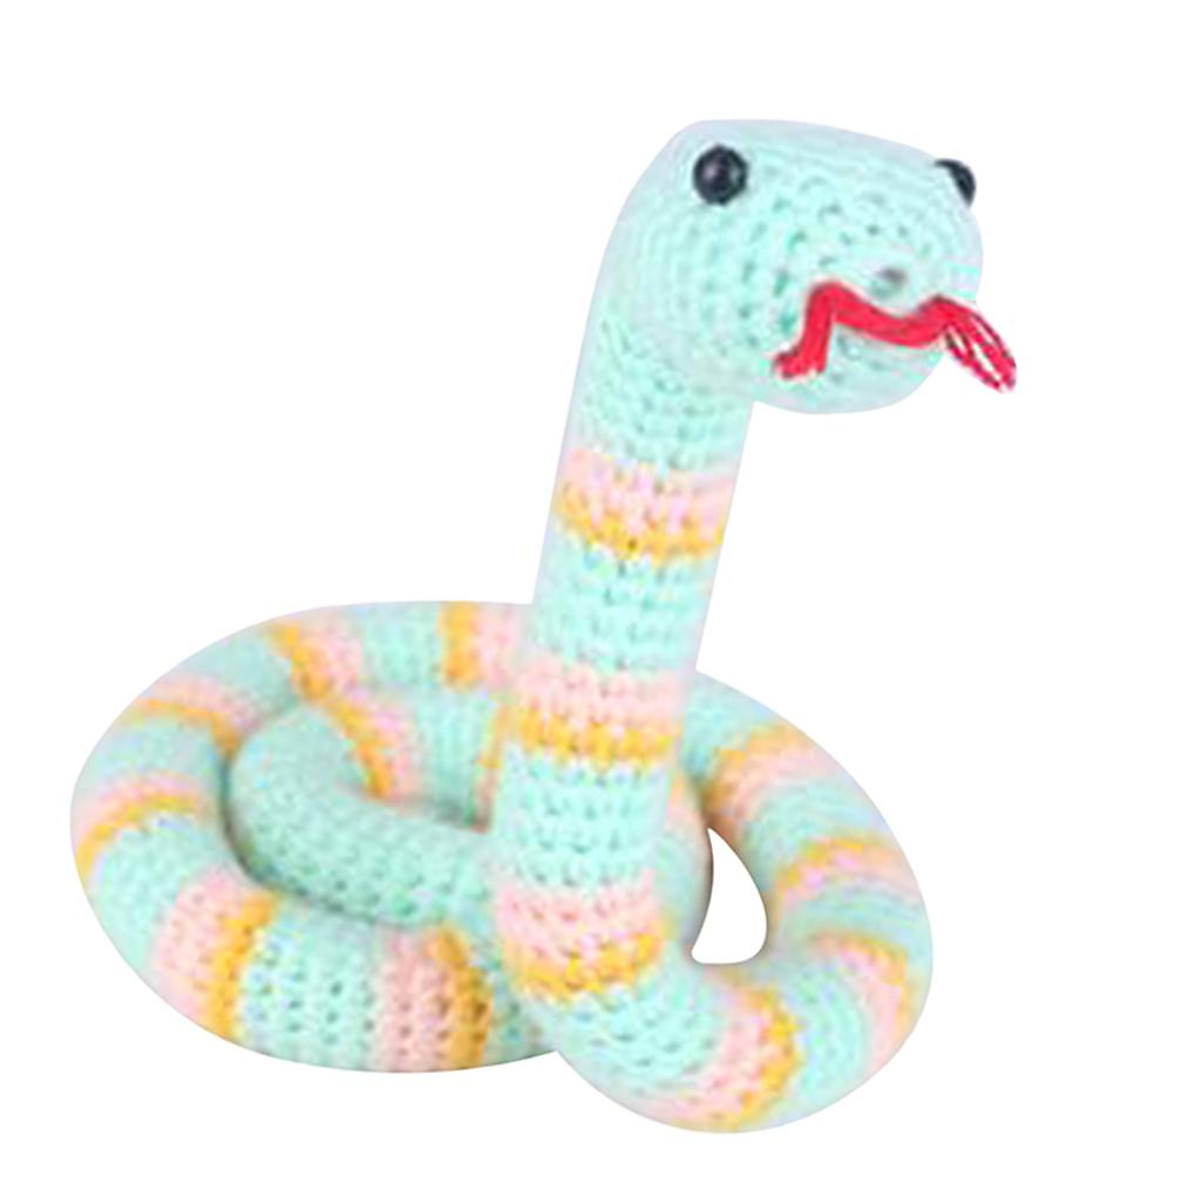 DIY Snake Crochet Kit for Teens Learn to Crochet Animal Stuffed ...